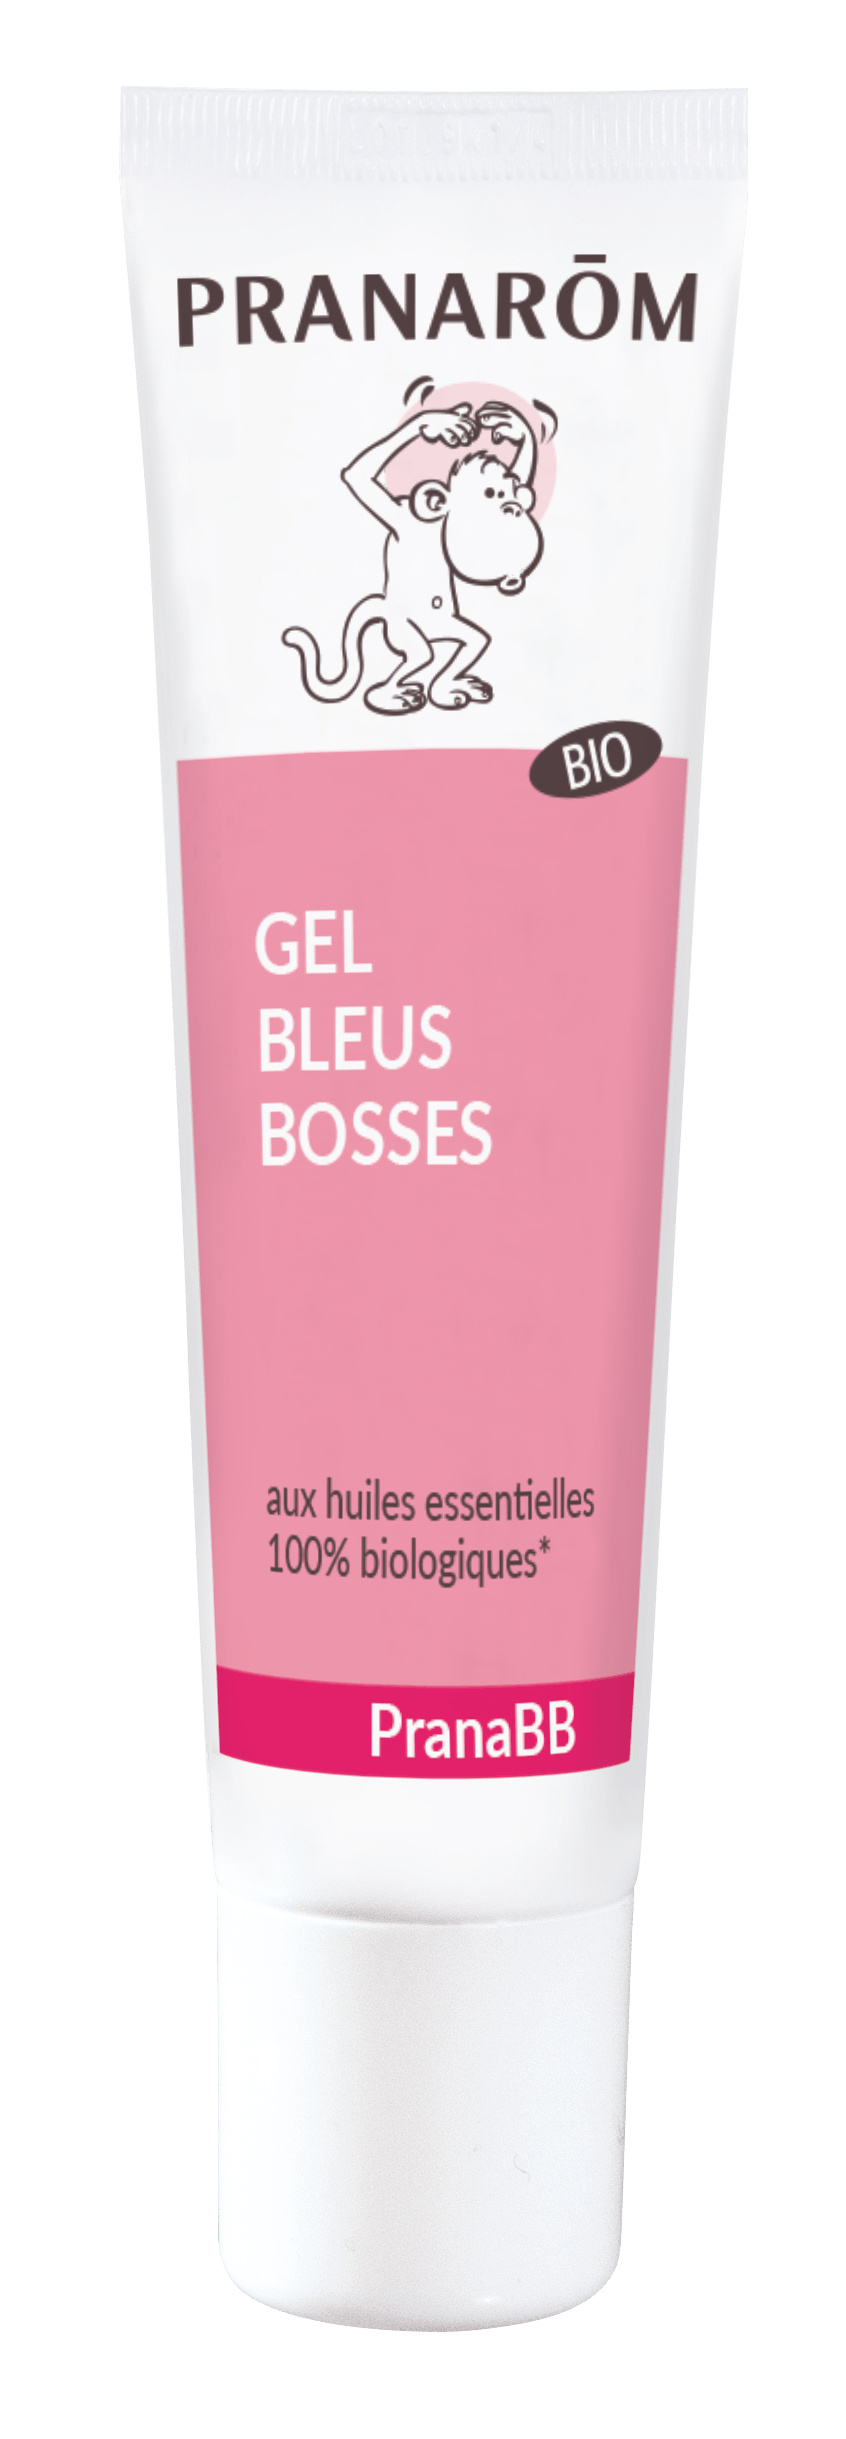 Gel bleu-bosses bio PRANABB